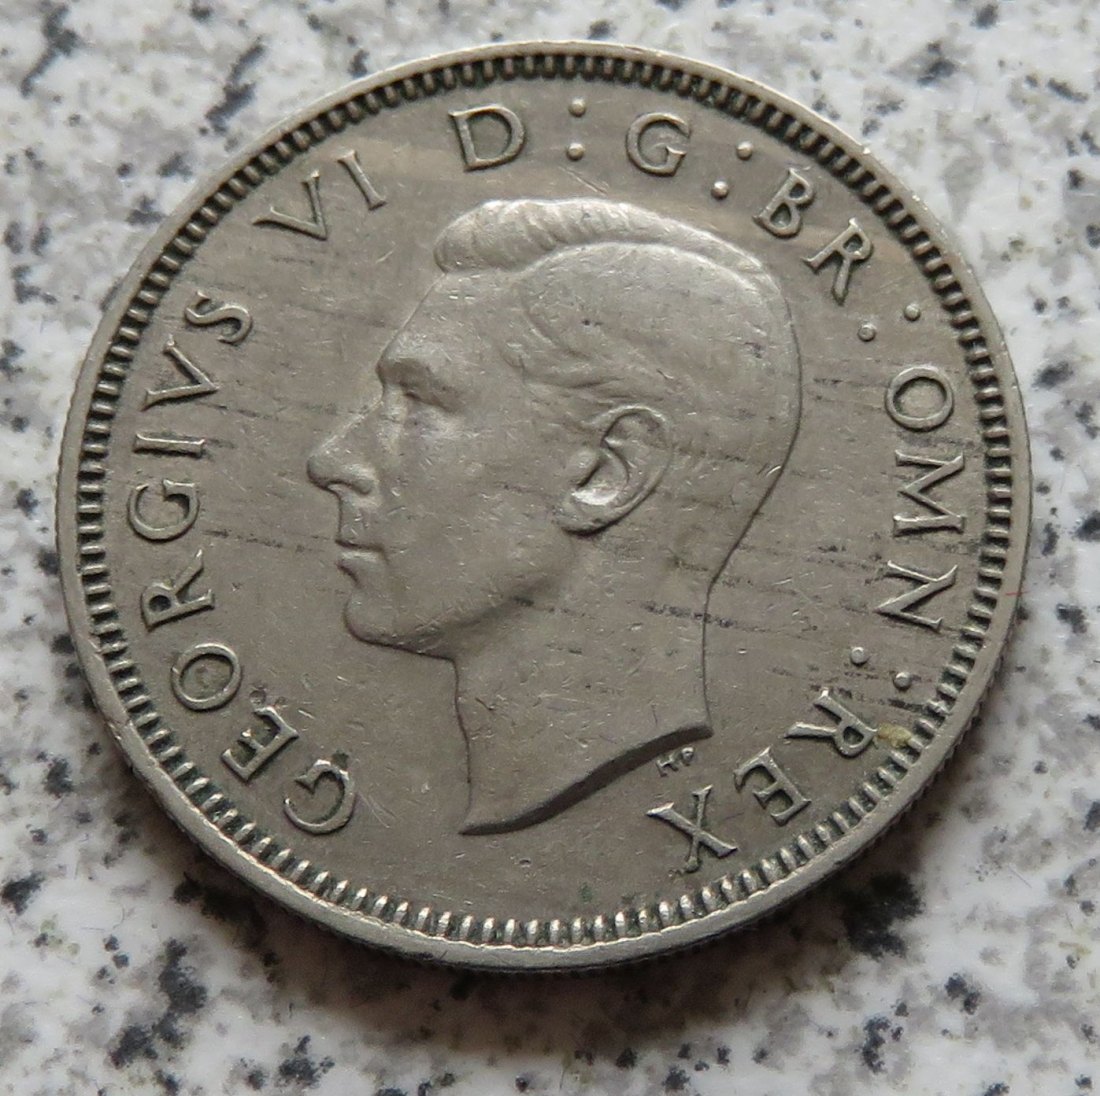  Großbritannien 1 Shilling 1950, Englisch   